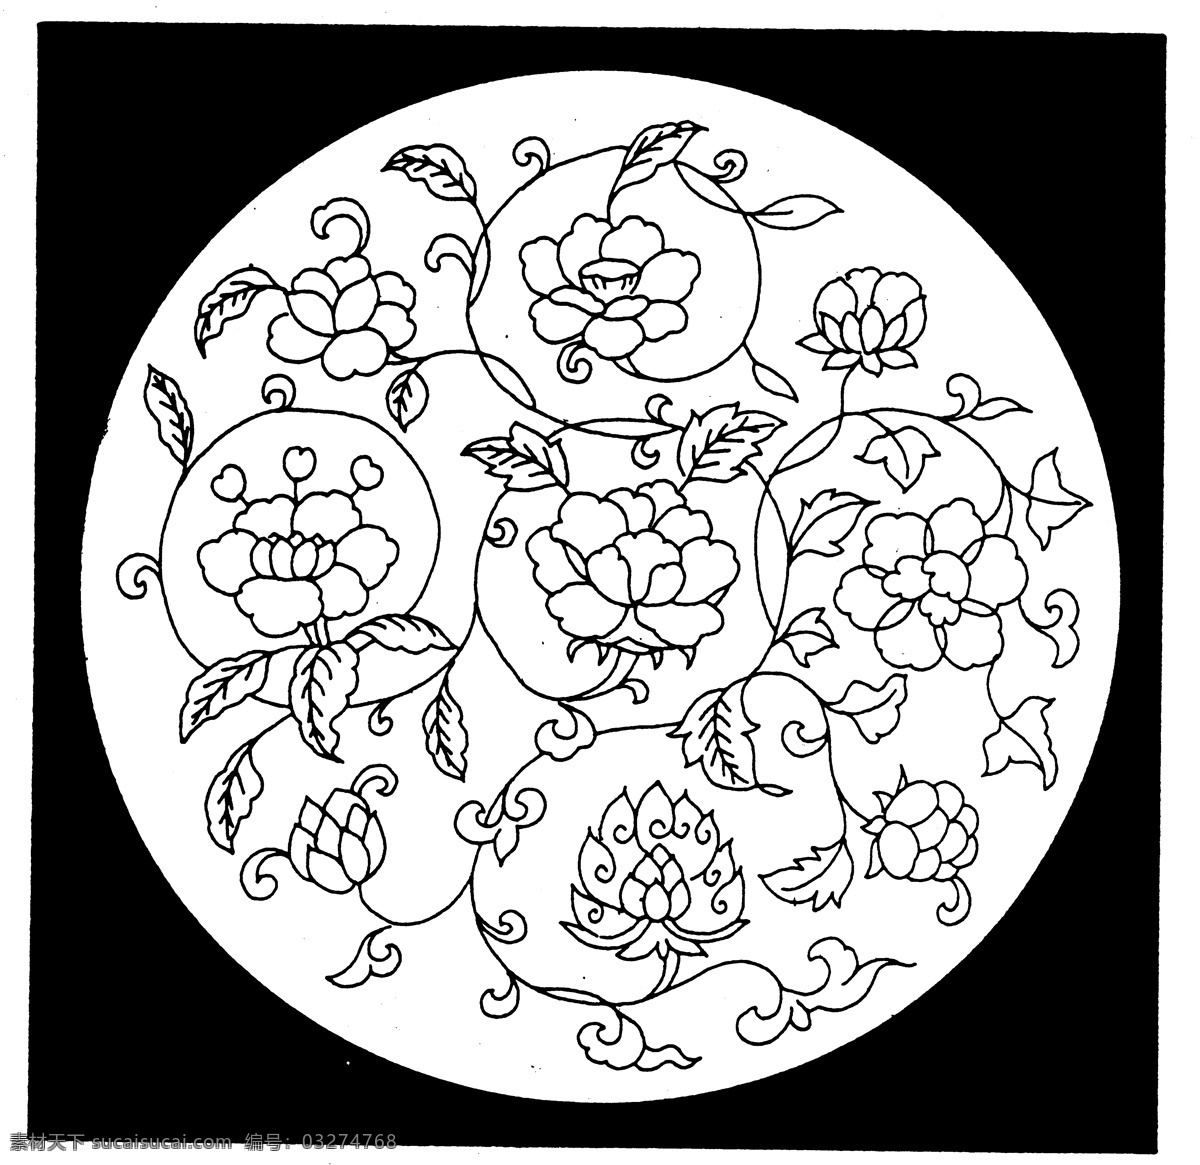 花鸟图案 元明时代图案 中国 传统 图案 设计素材 装饰图案 书画美术 白色